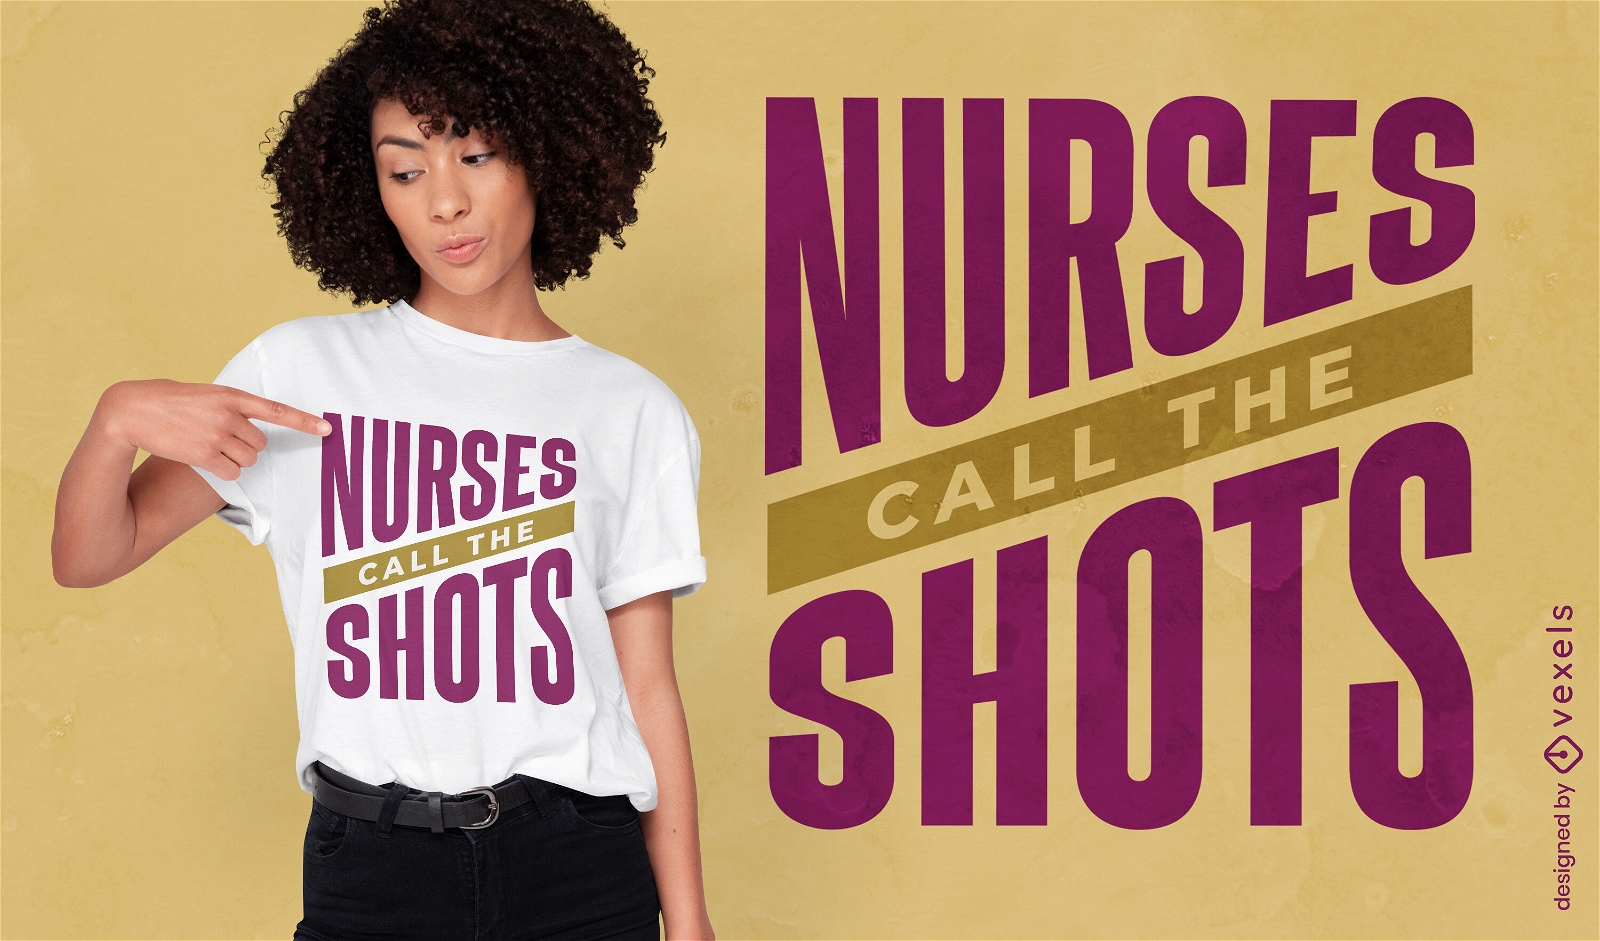 Dise?o de camiseta de enfermeras que toman las decisiones.